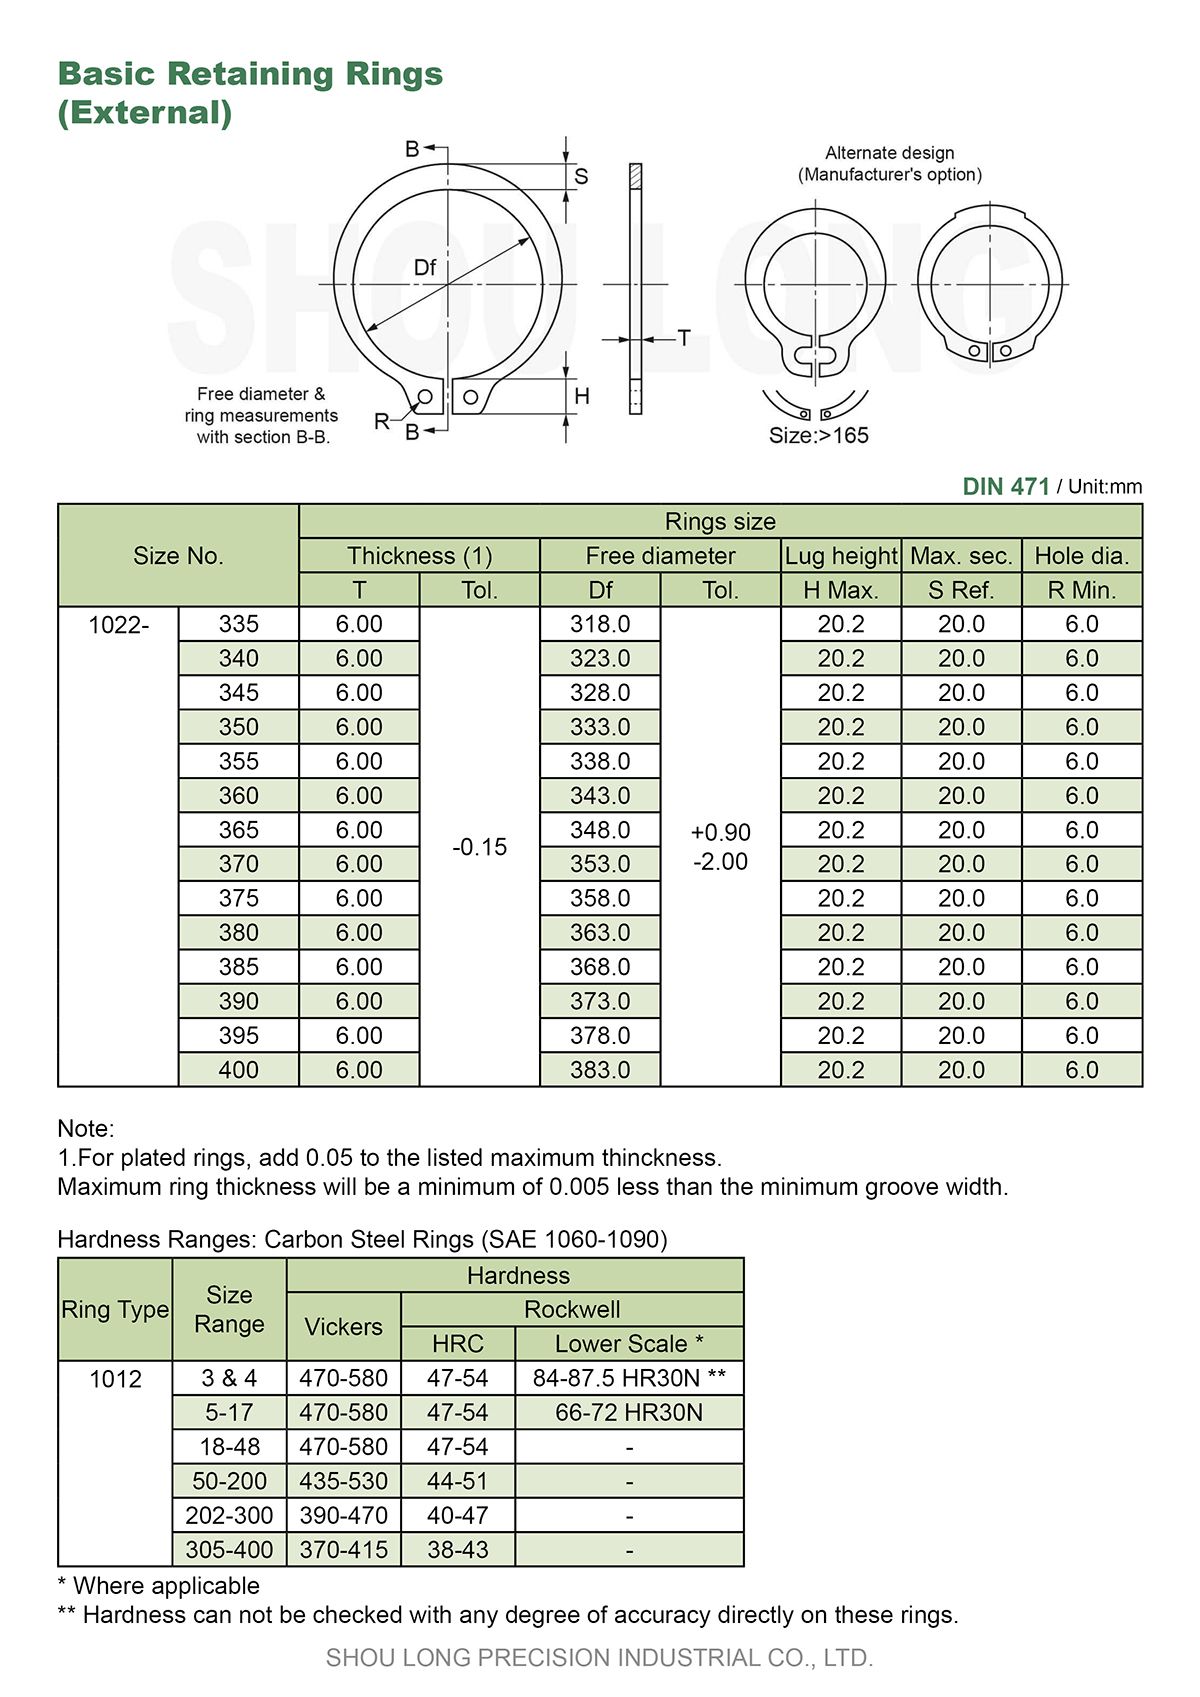 Especificação de Anéis de Retenção Básicos Métricos para Eixo DIN471-7